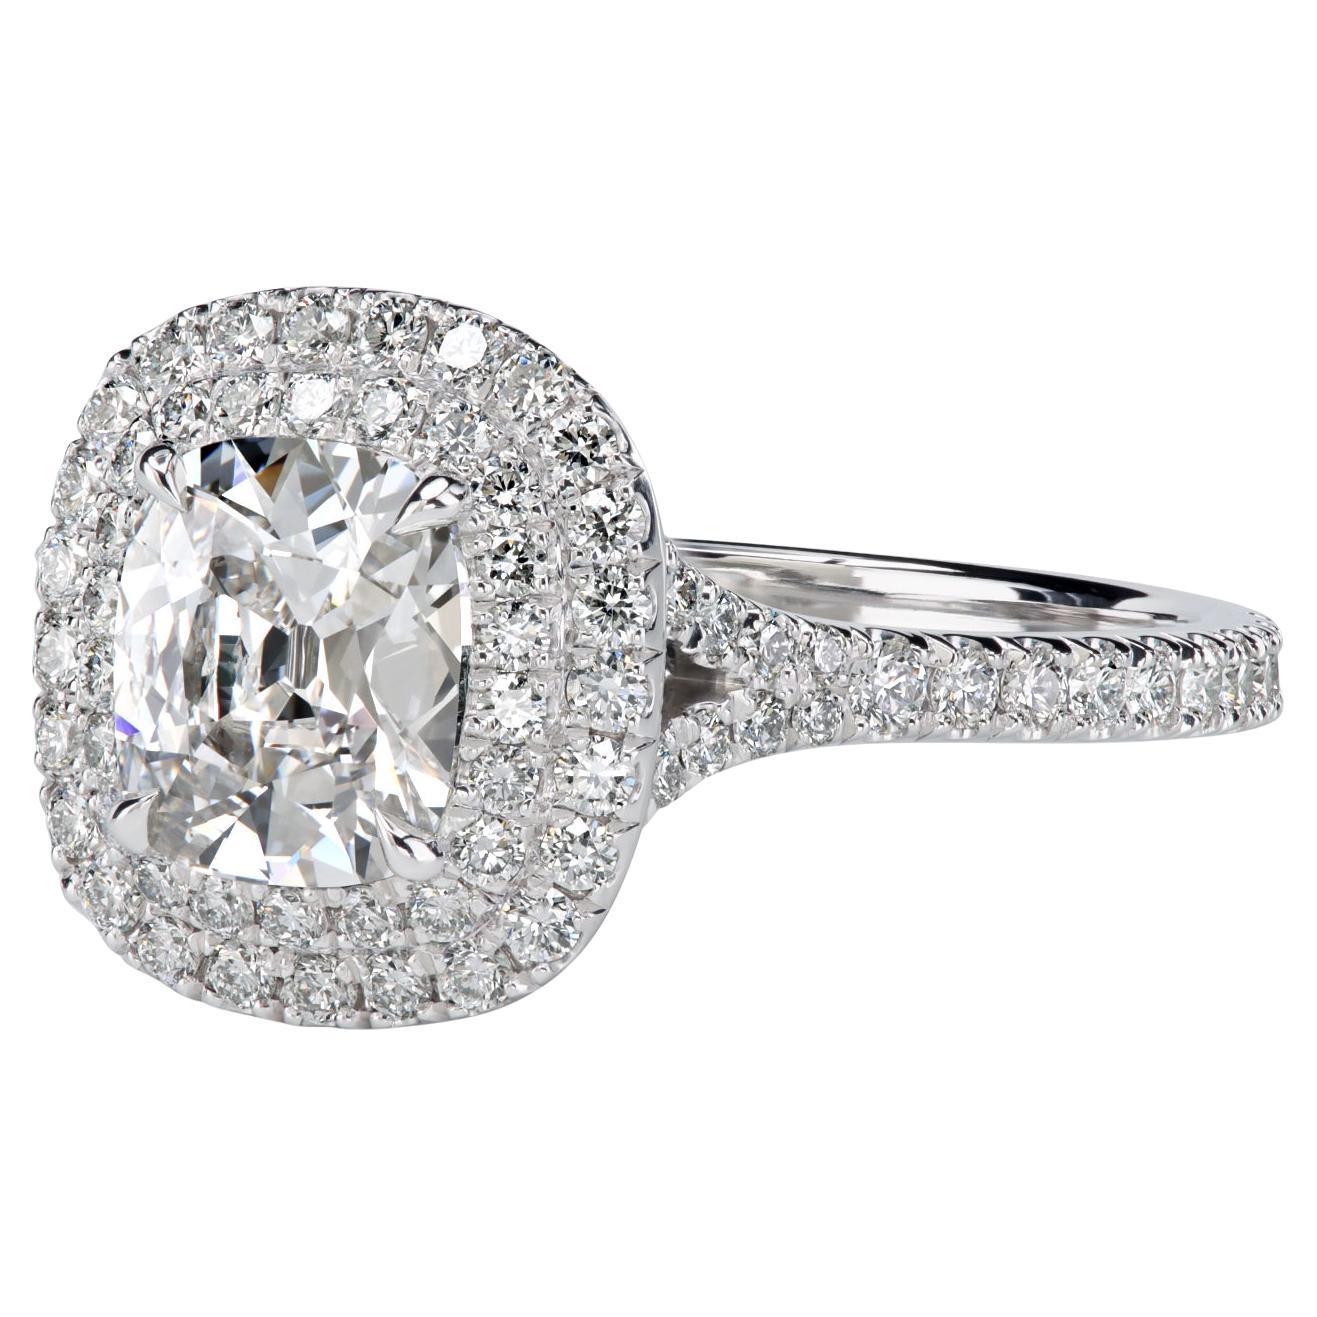 Leon Megé Platinum Double Halo Ring with 1.01-carat Antique Cut Cushion Diamond For Sale